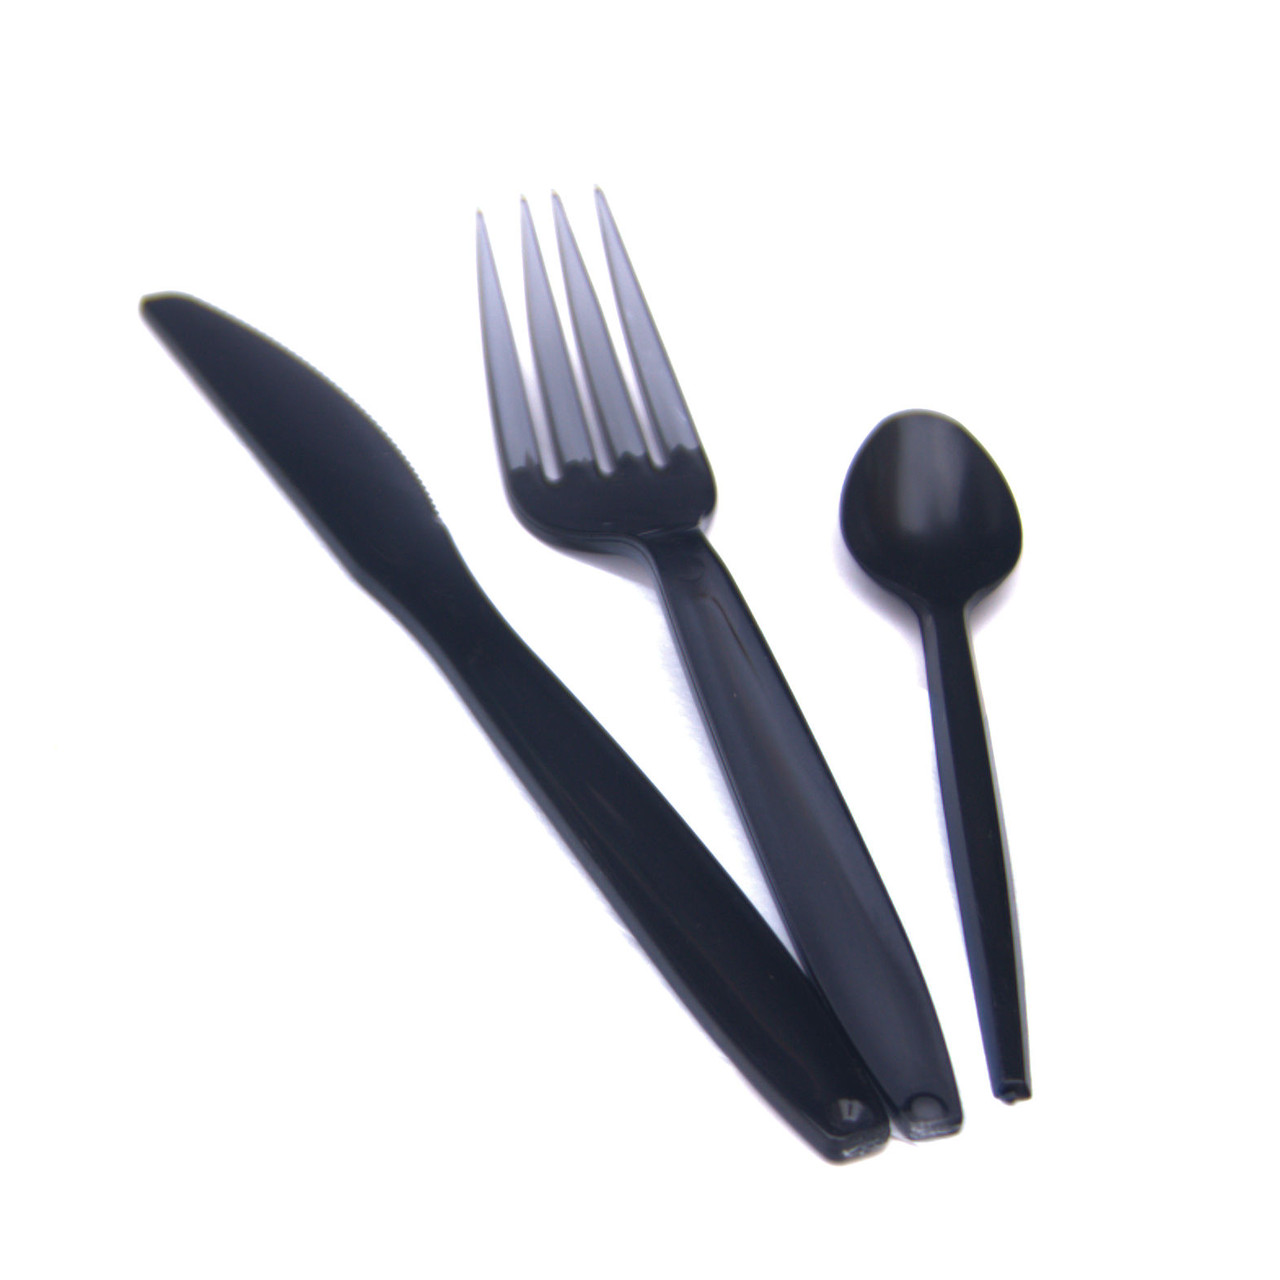 Posate confezionate singolarmente con tovagliolo  Coltello forchetta e  cucchiaio nero di qualità con tovagliolo dalla confezione starliuht